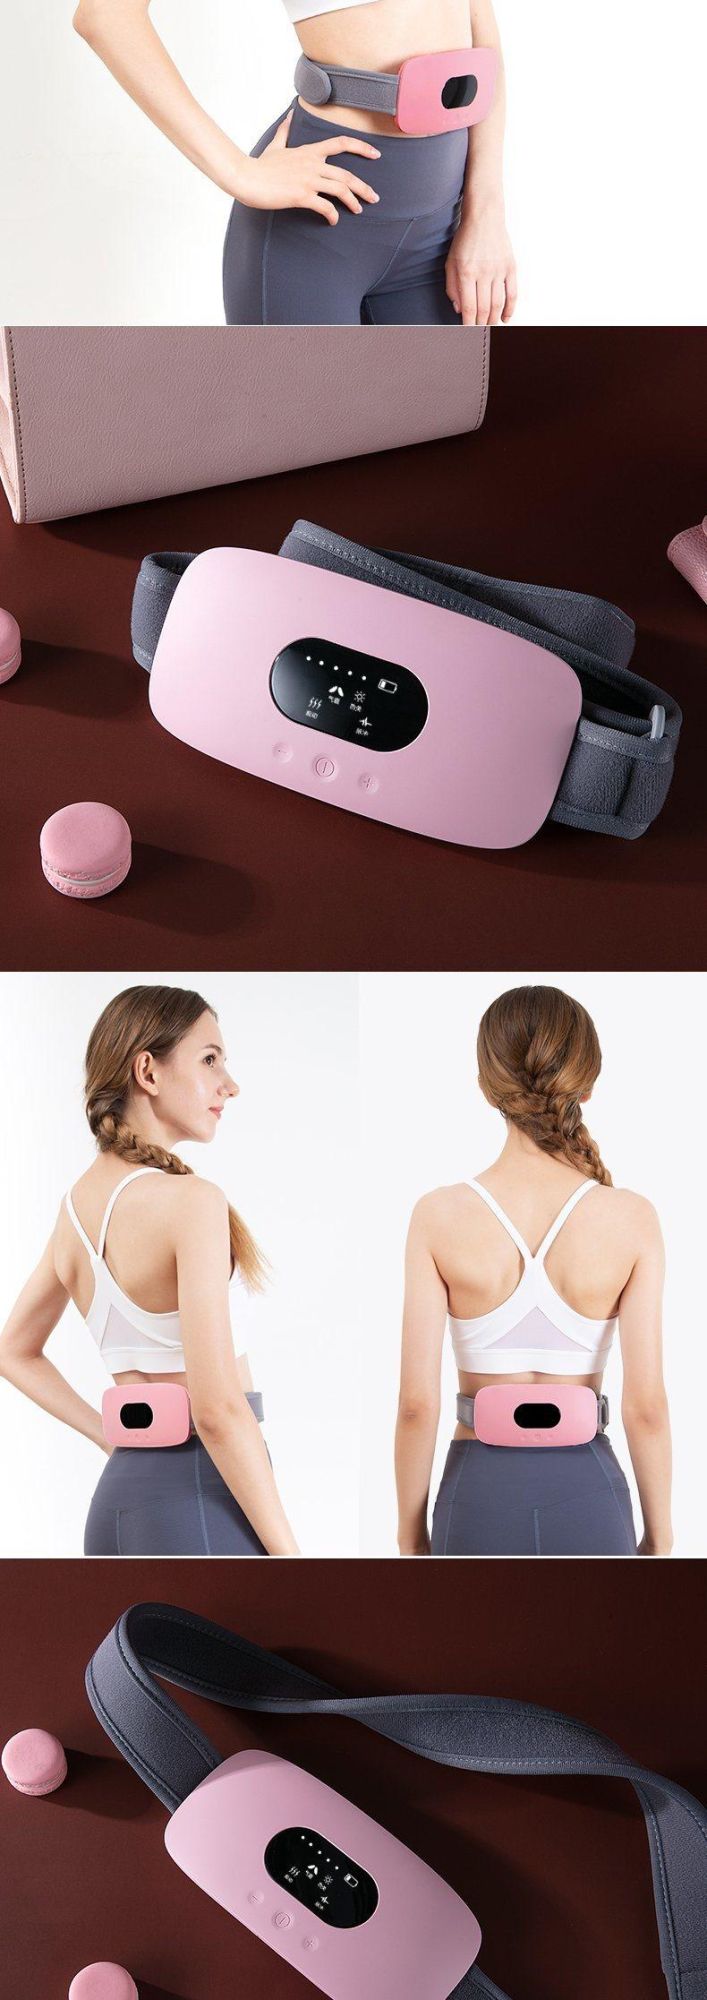 Hezheng Electric Weight Loss Belly Waist Vibration Belt Body Abdomen Massager Machine